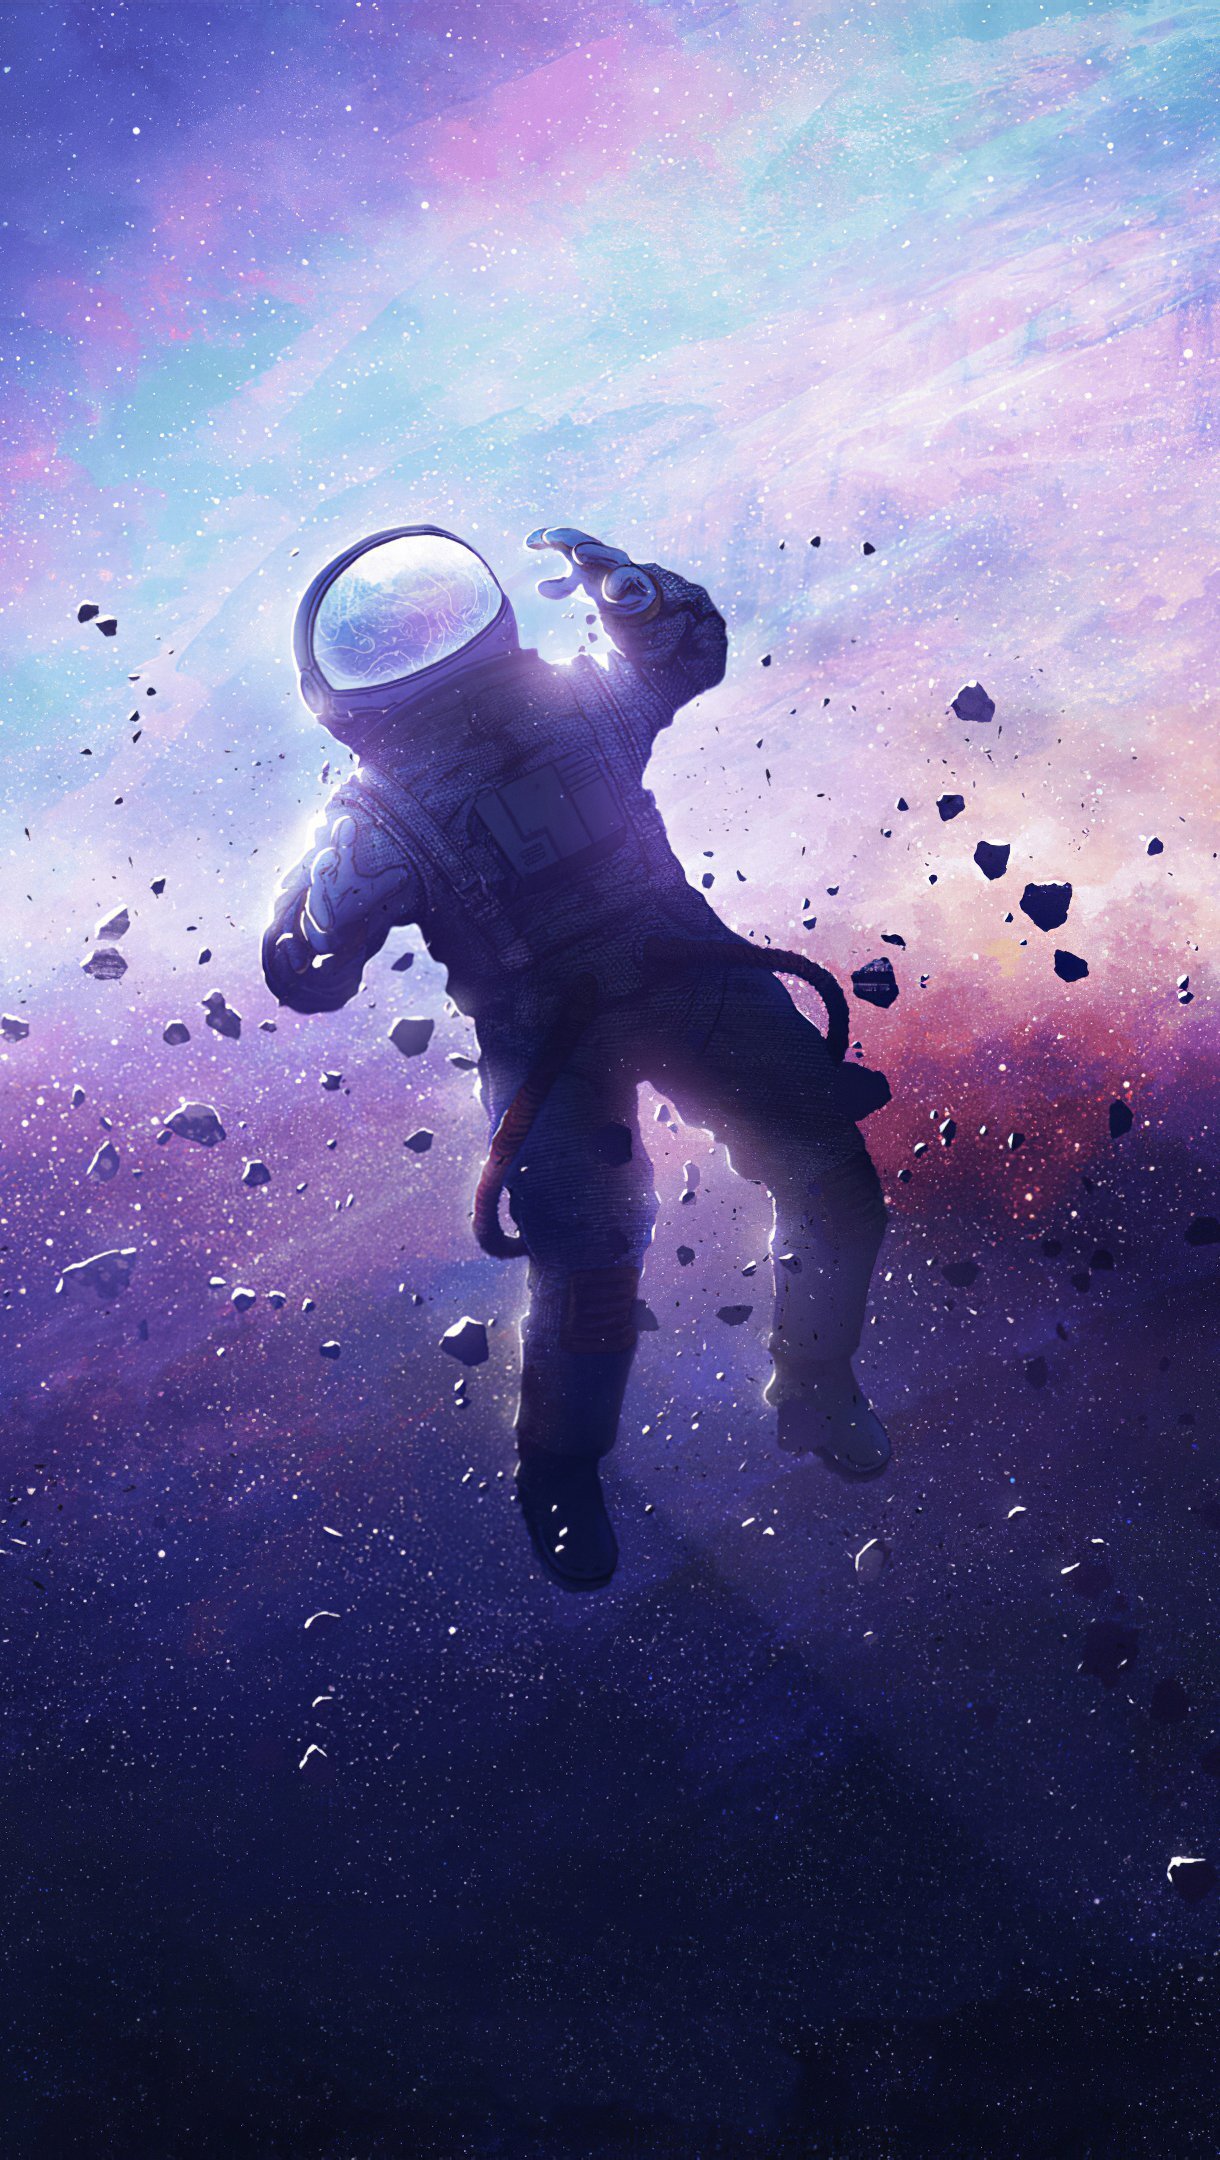 Astronaut lost in space Wallpaper 4k Ultra HD ID:5498